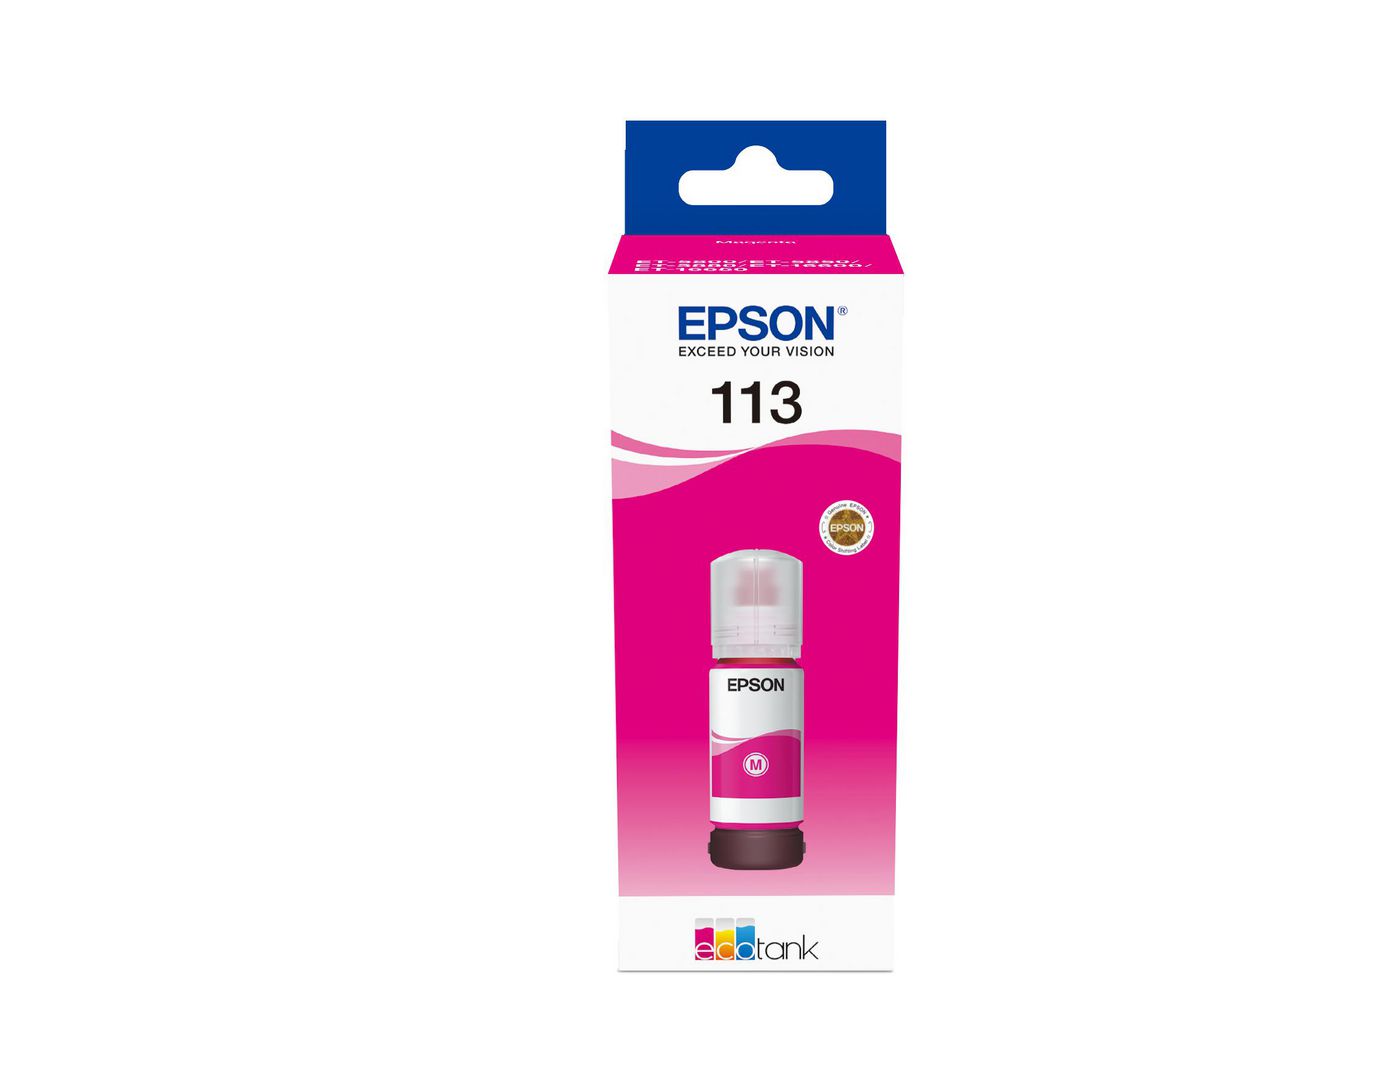 EPSON Tinte magenta             70ml